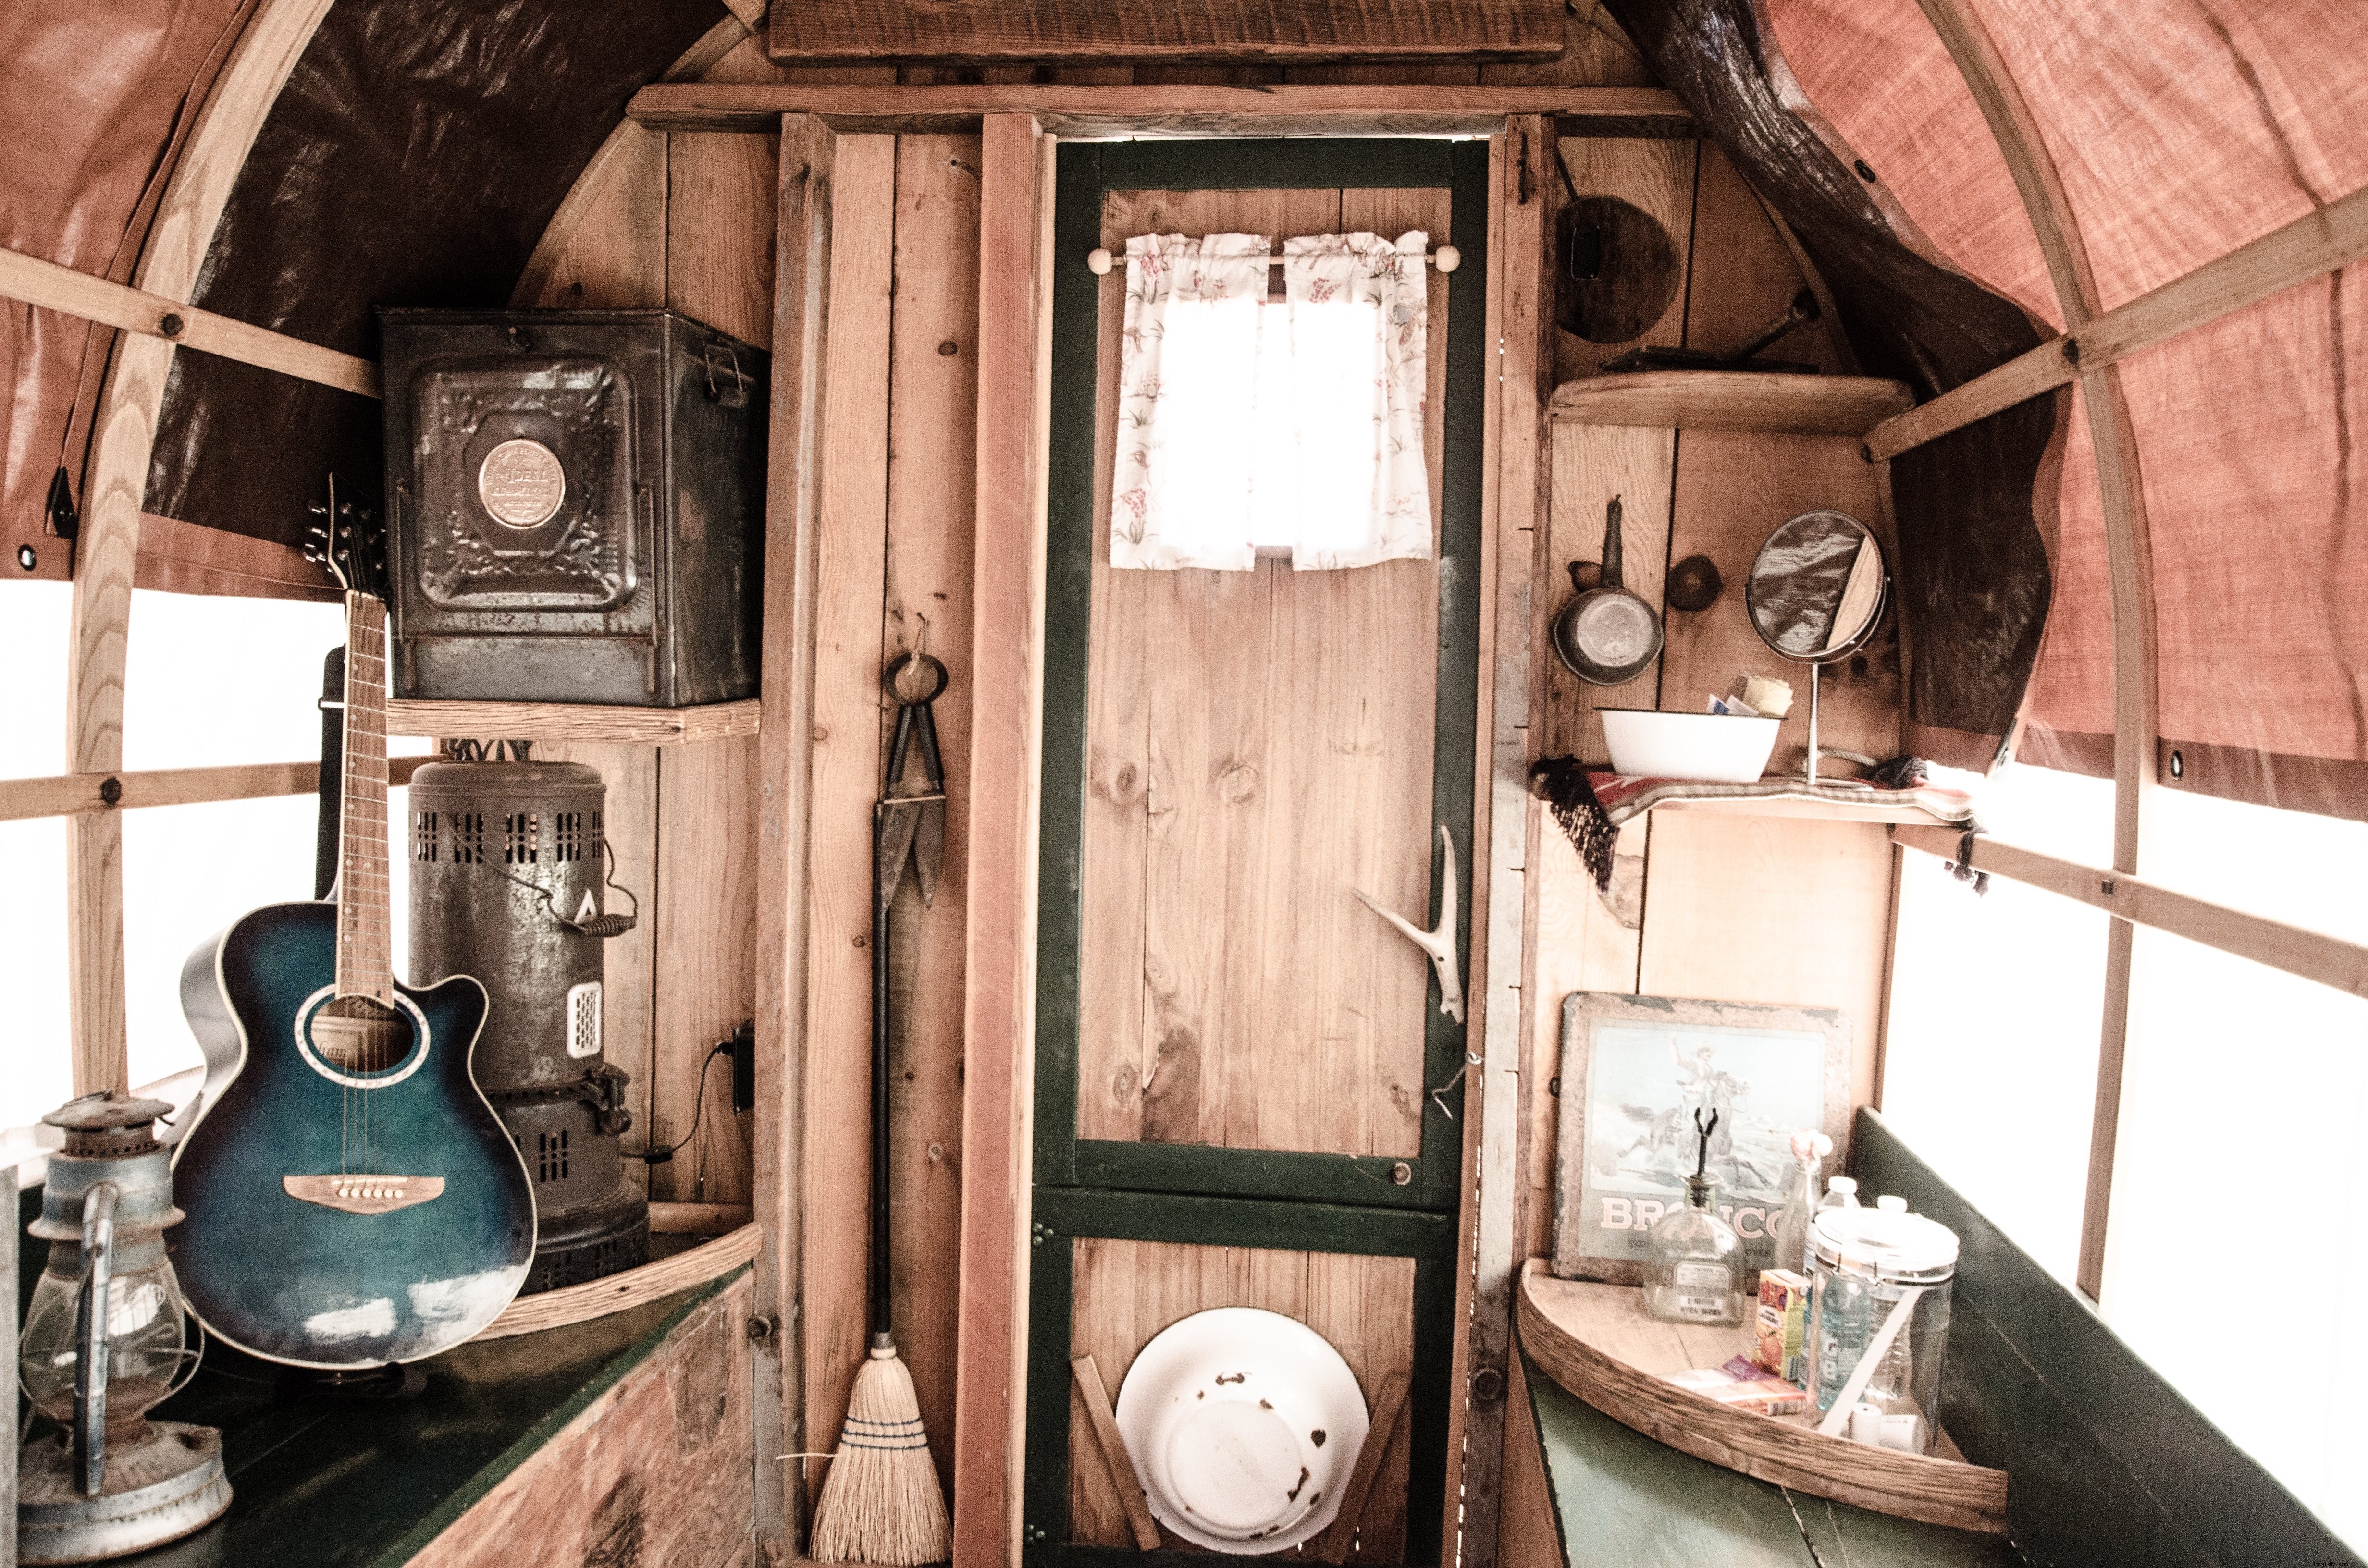 Objets domestiques musicaux et rustiques à l intérieur d une photo de caravane